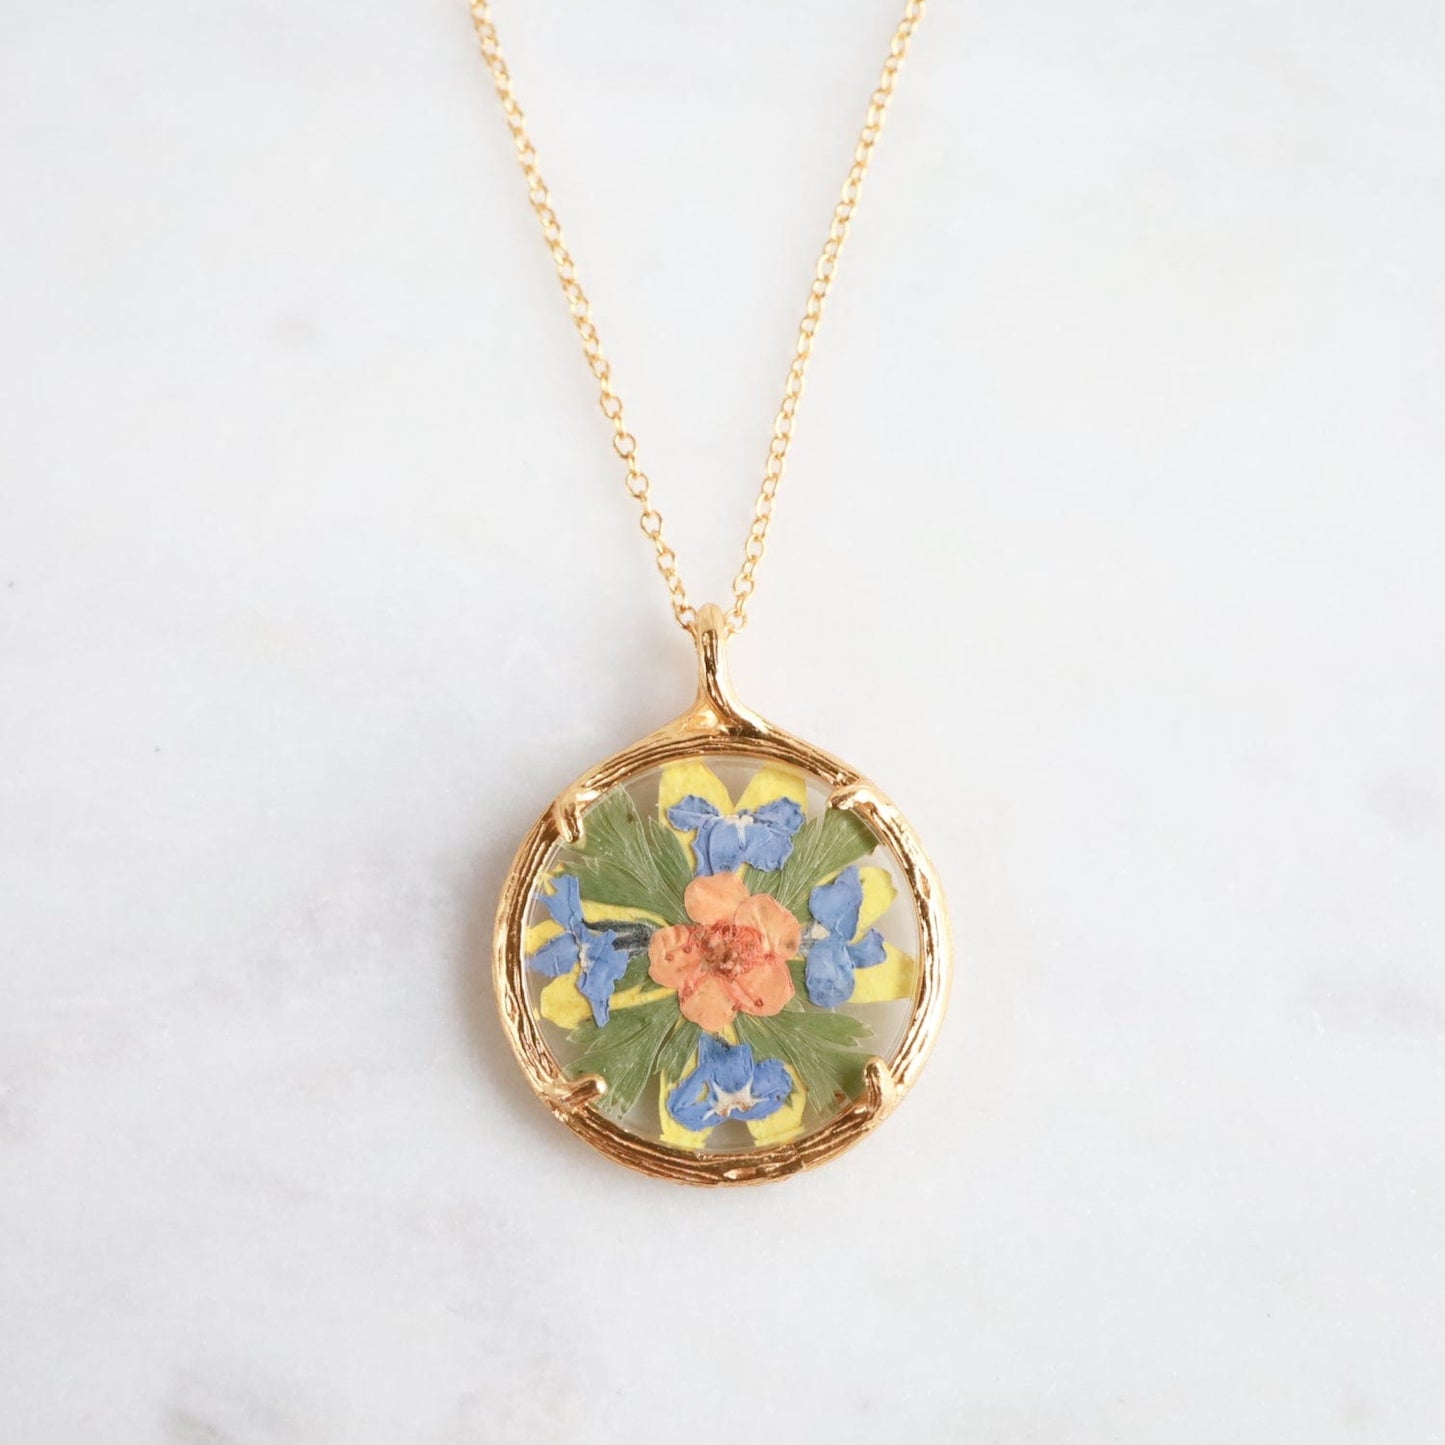 NKL-VRM Small Flower Mandala Necklace - 18k Gold Vermeil